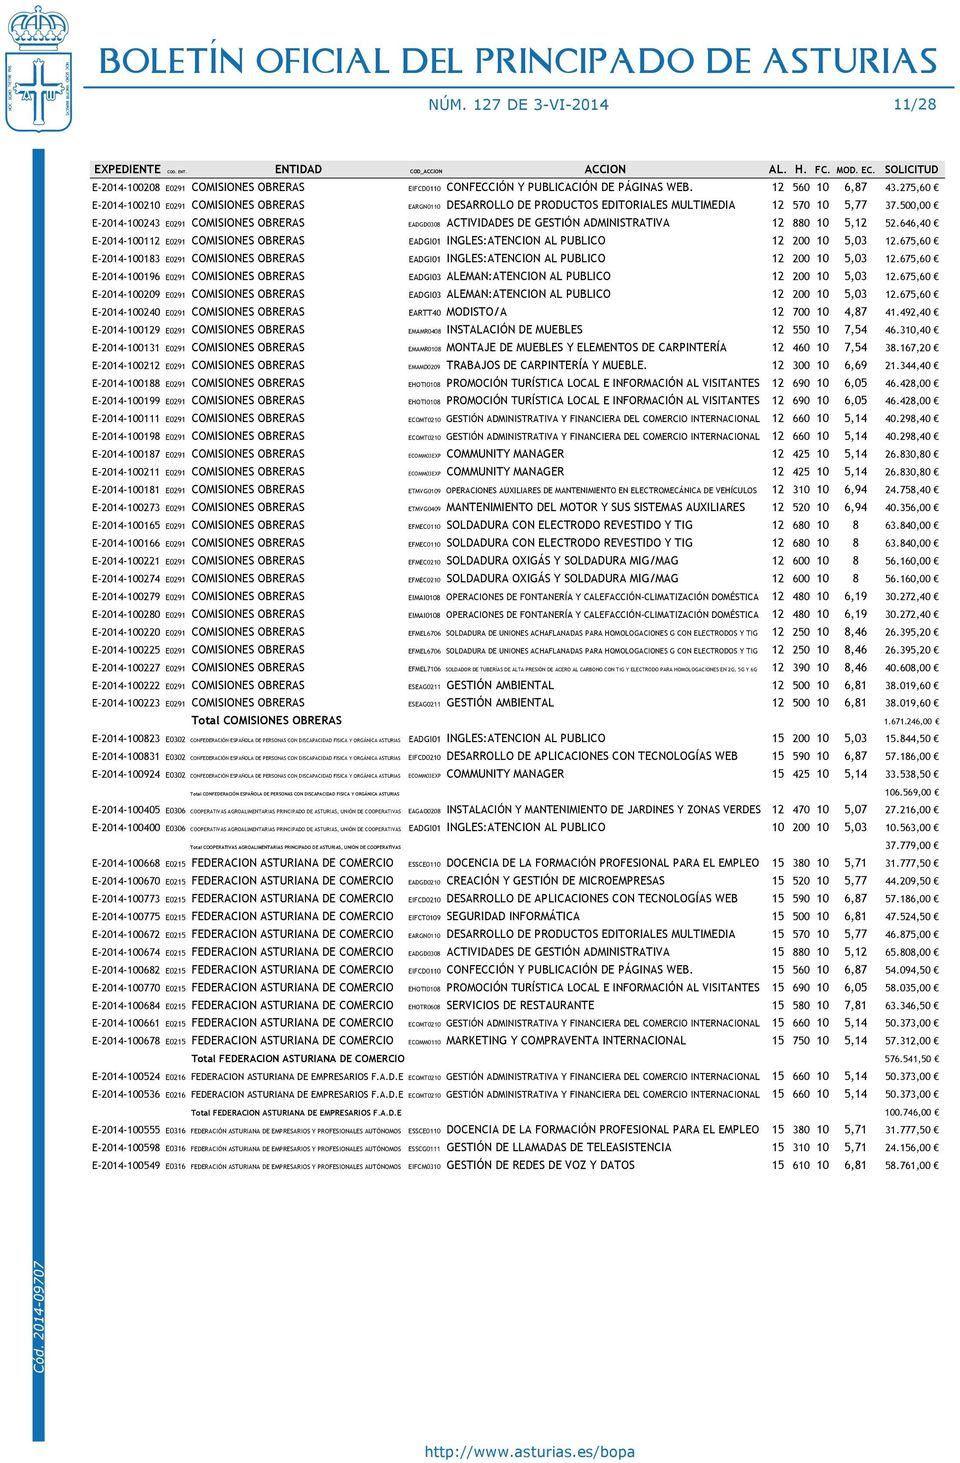 275,60 E-2014-100210 E0291 COMISIONES OBRERAS EARGN0110 DESARROLLO DE PRODUCTOS EDITORIALES MULTIMEDIA 12 570 10 5,77 37.